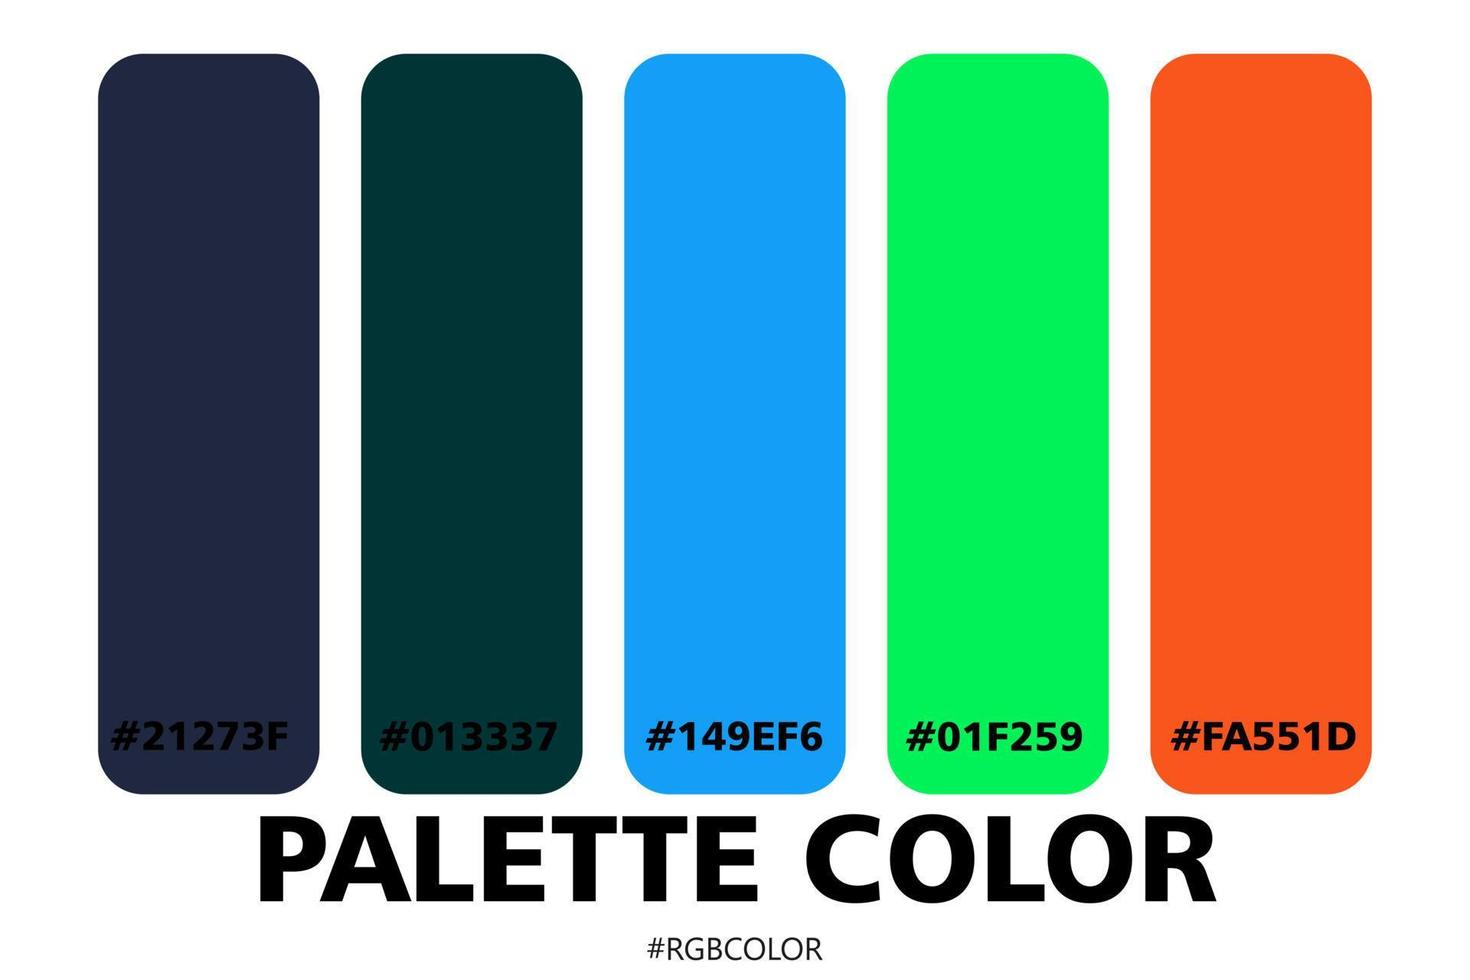 uma coleção de paletas de cores precisas com códigos, perfeitas para uso por ilustradores vetor